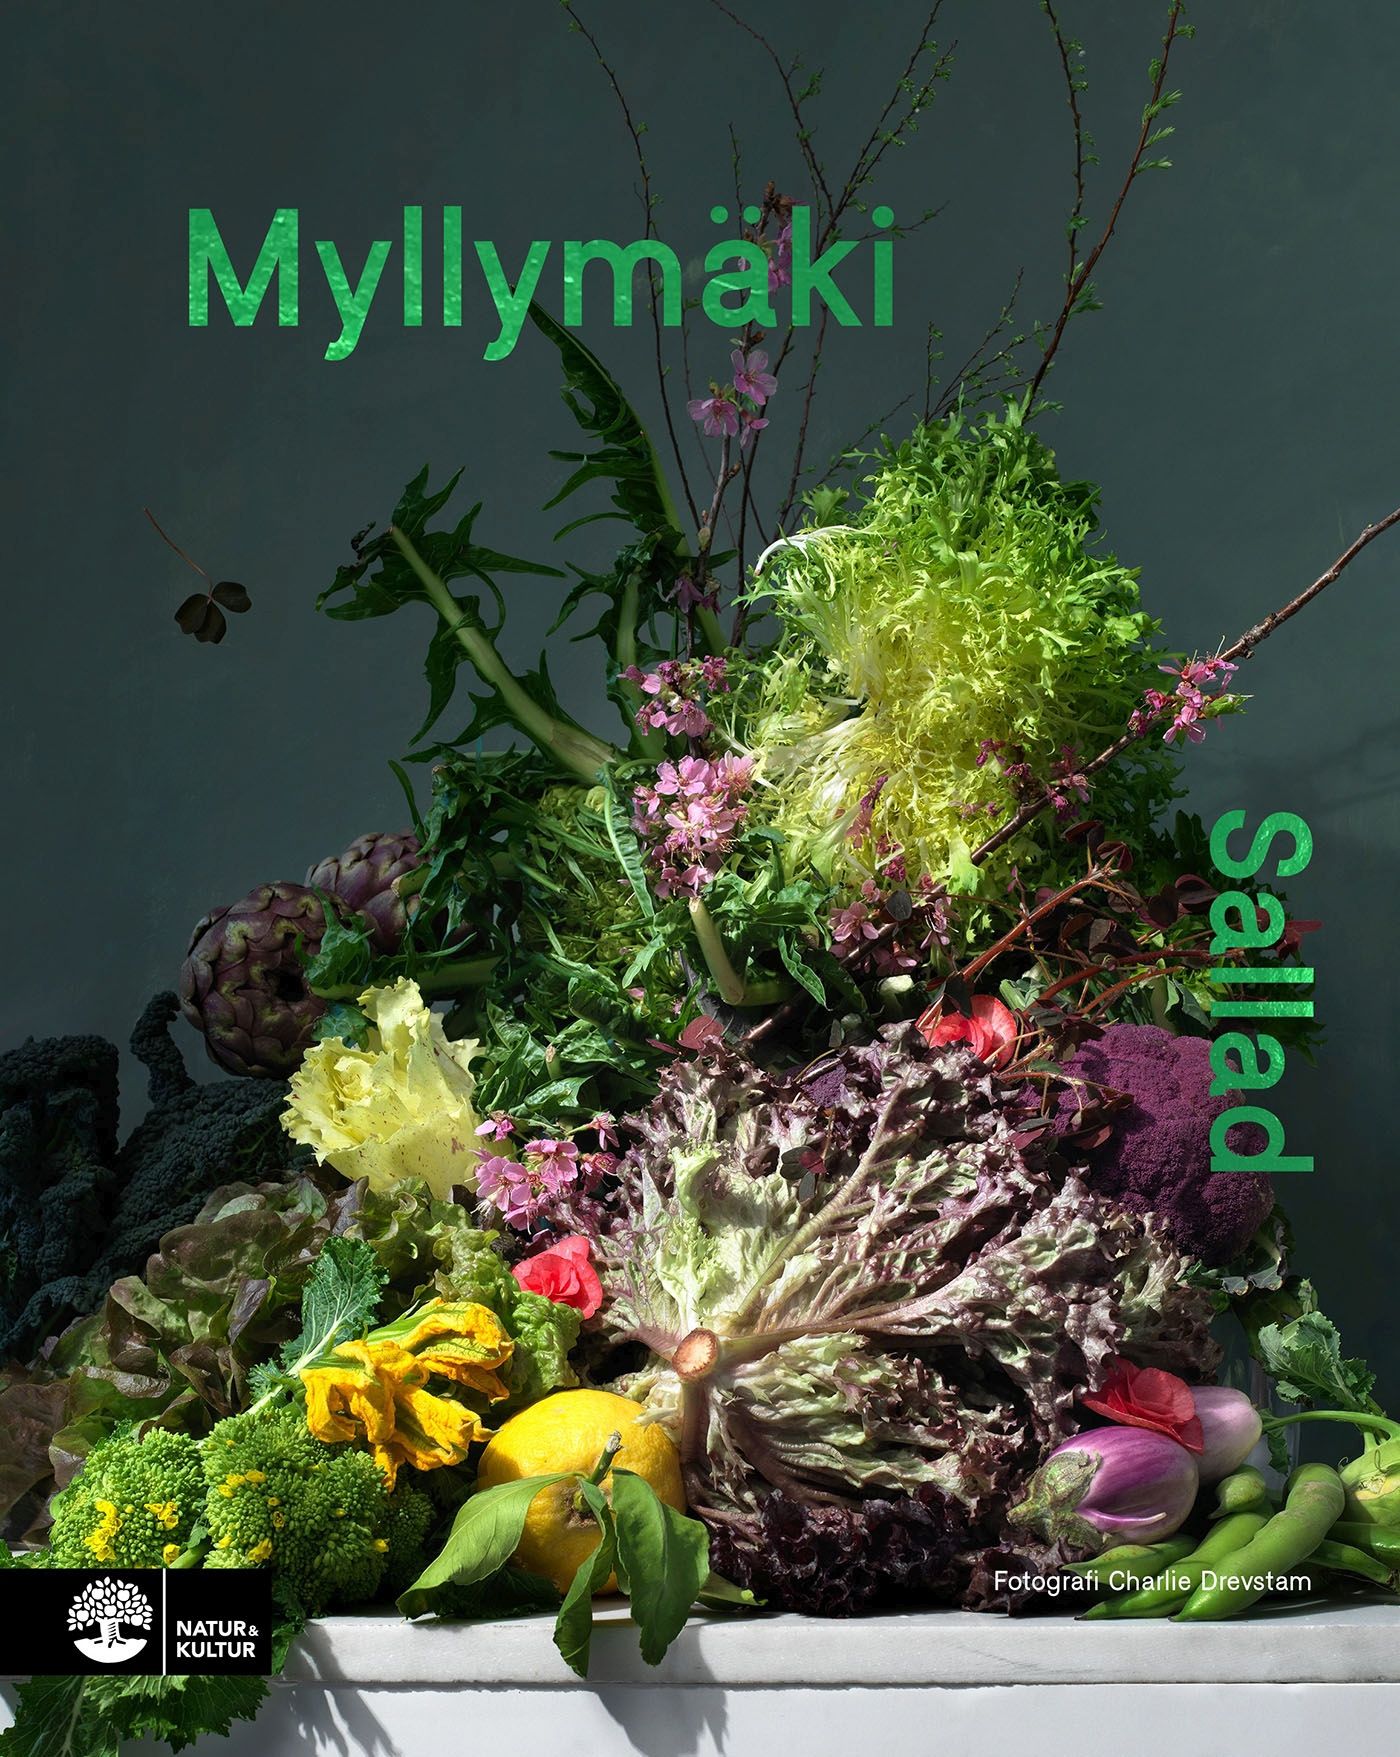 Sallad, e-bok av Tommy Myllymäki